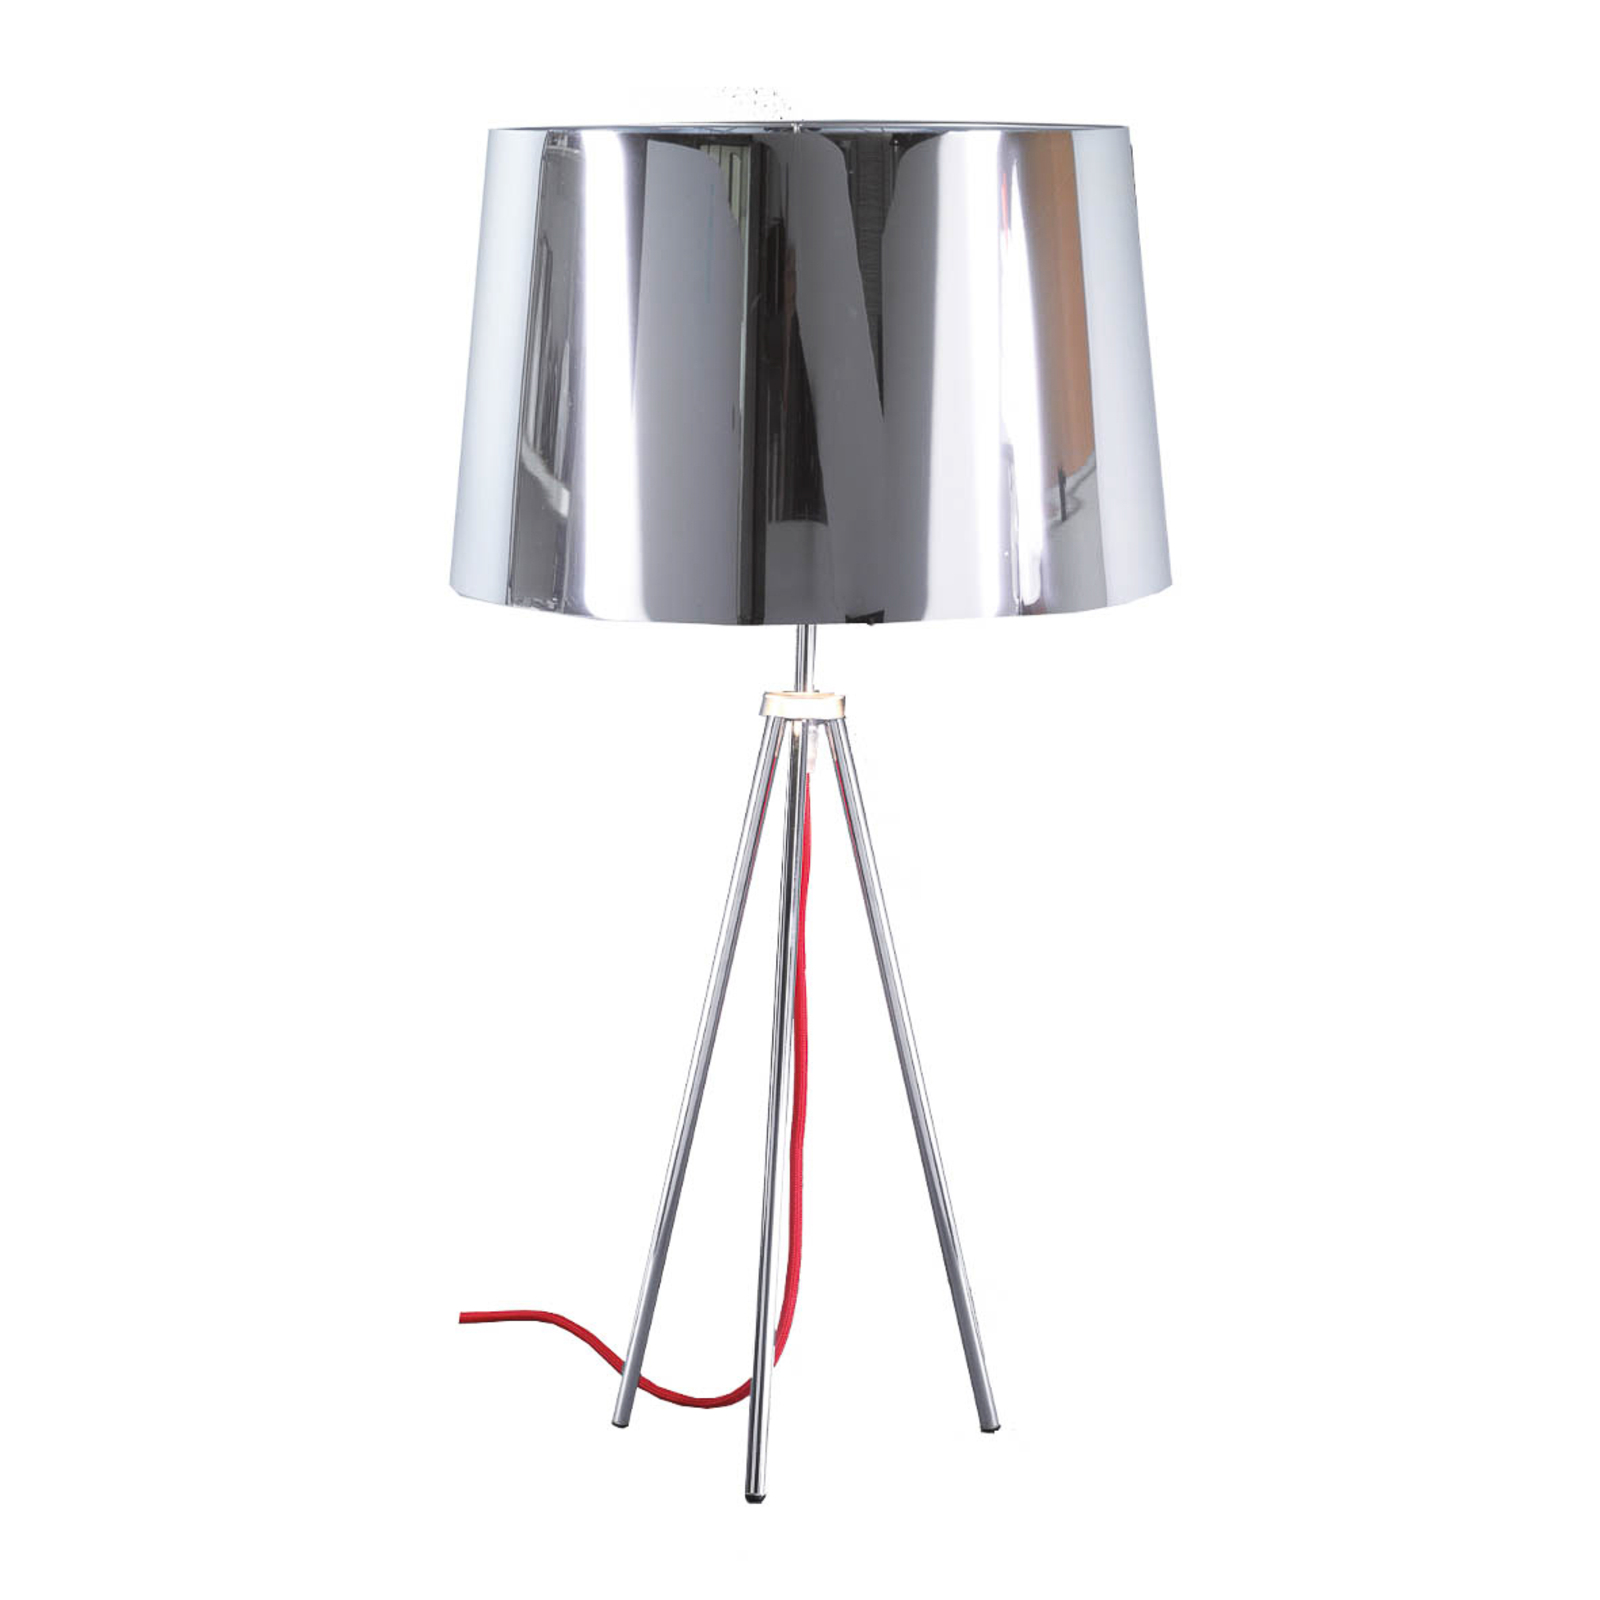 Aluminor Tropic-pöytälamppu, kromi, punainen johto